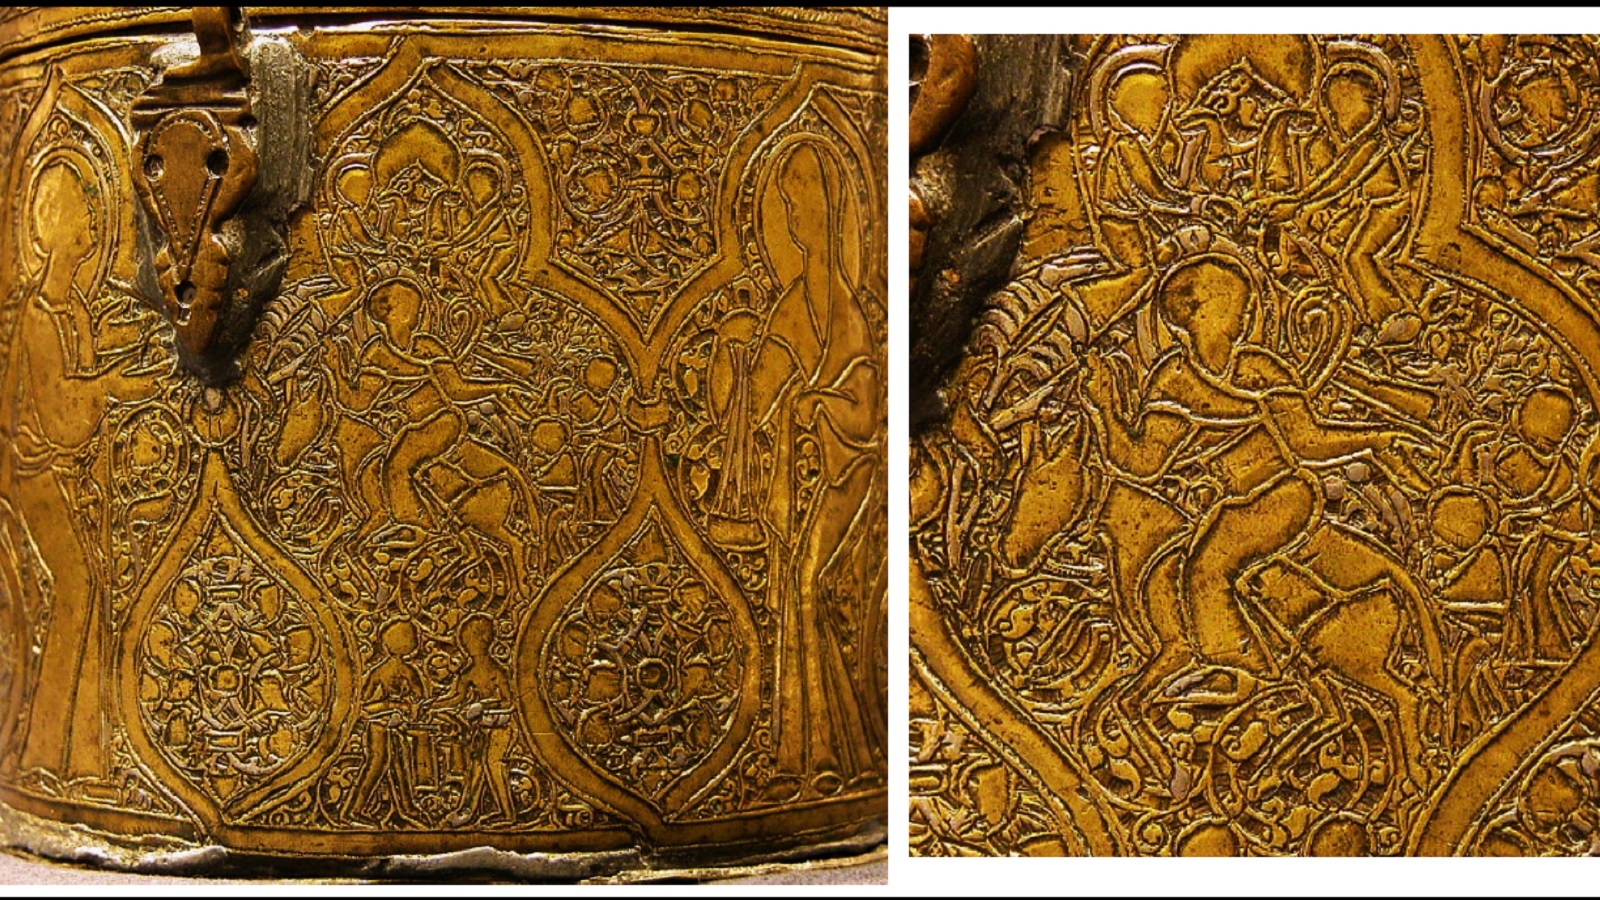  الشعانين، علبة نحاسية، سوريا، القرن الثالث عشر، متحف متروبوليتان، نيويورك. 